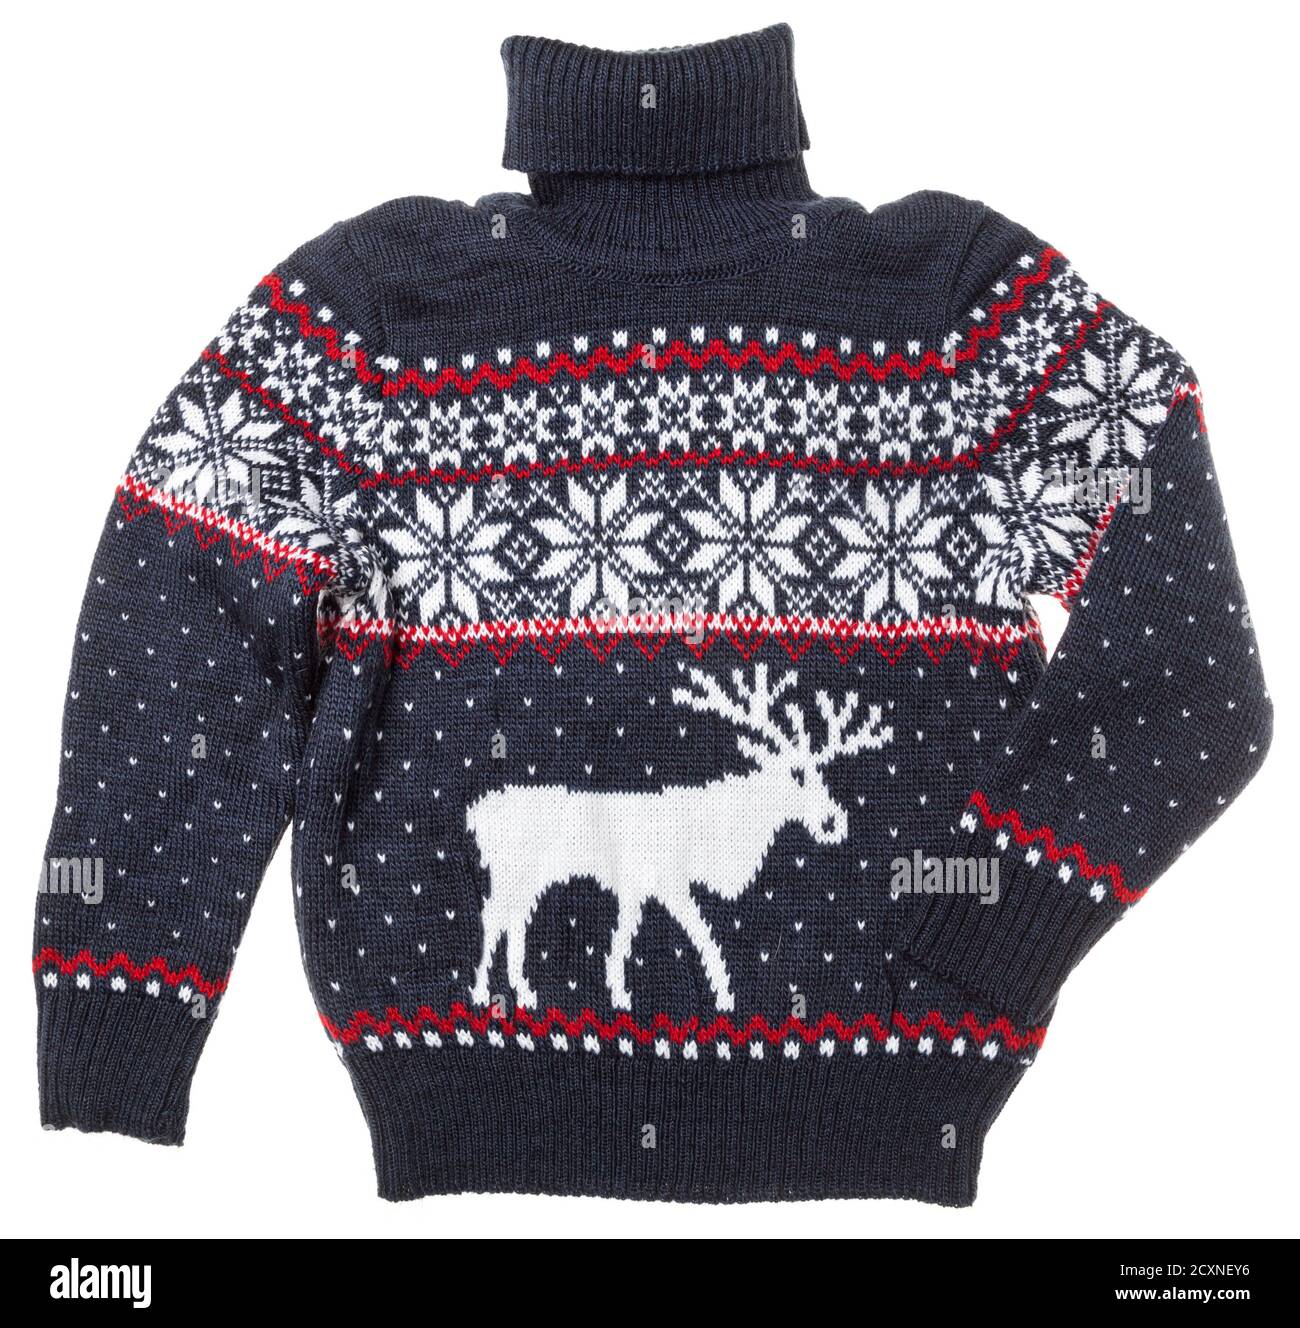 Per i bambini di Natale a maglia turtleneck maglione di design tradizionale con alce elk o ornamento isolati su sfondo bianco Foto Stock